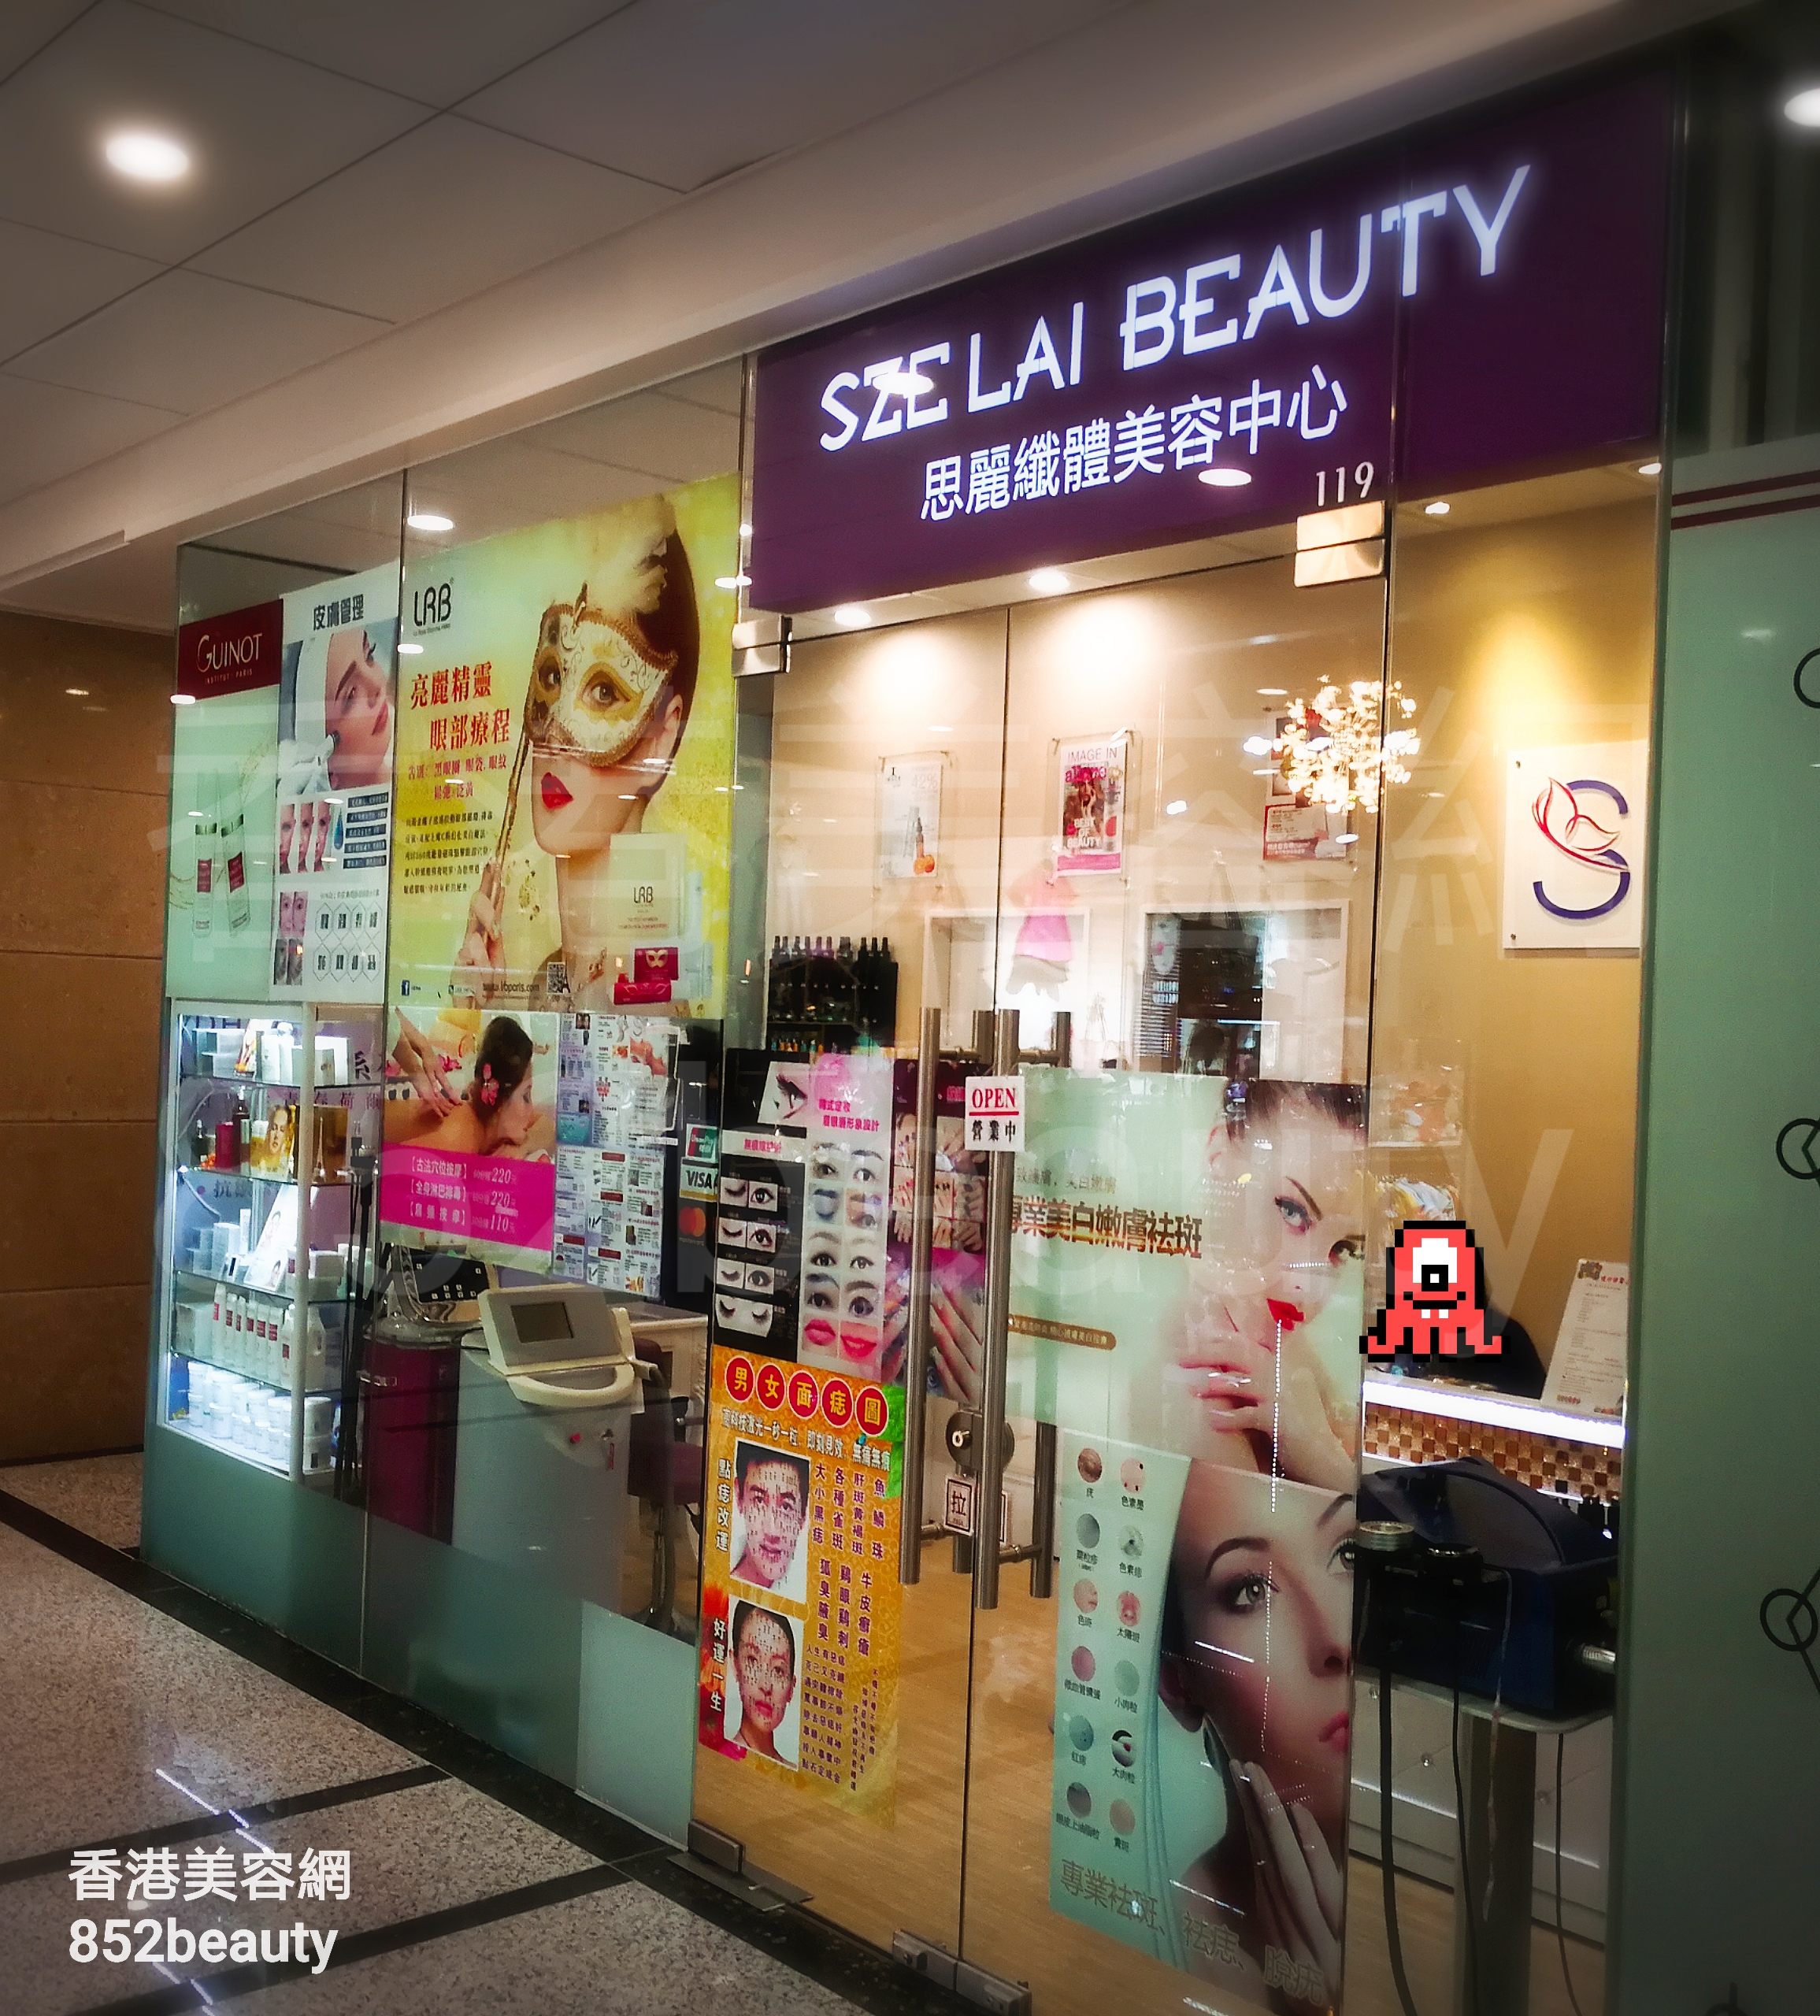 美容院 Beauty Salon: 思麗纖體美容中心 SZE LAI BEAUTY